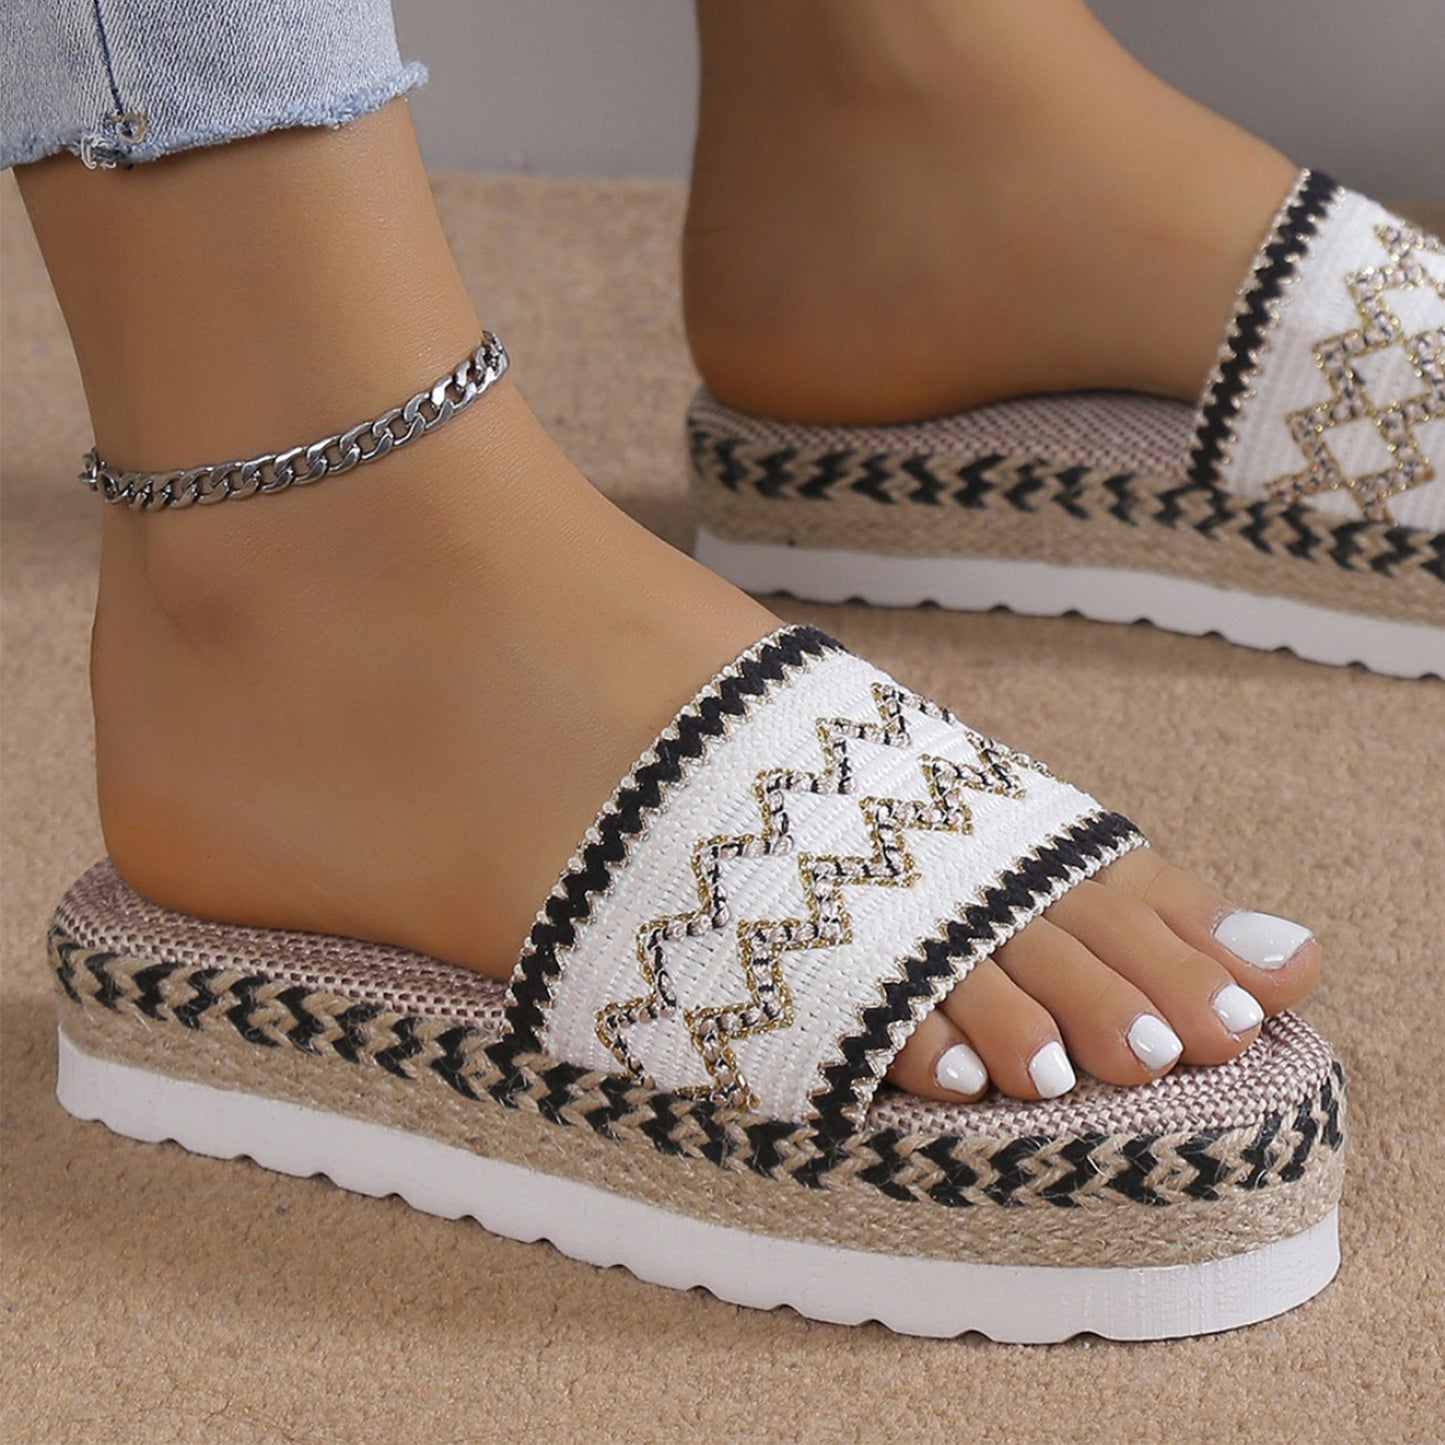 Weave Platform Sandals